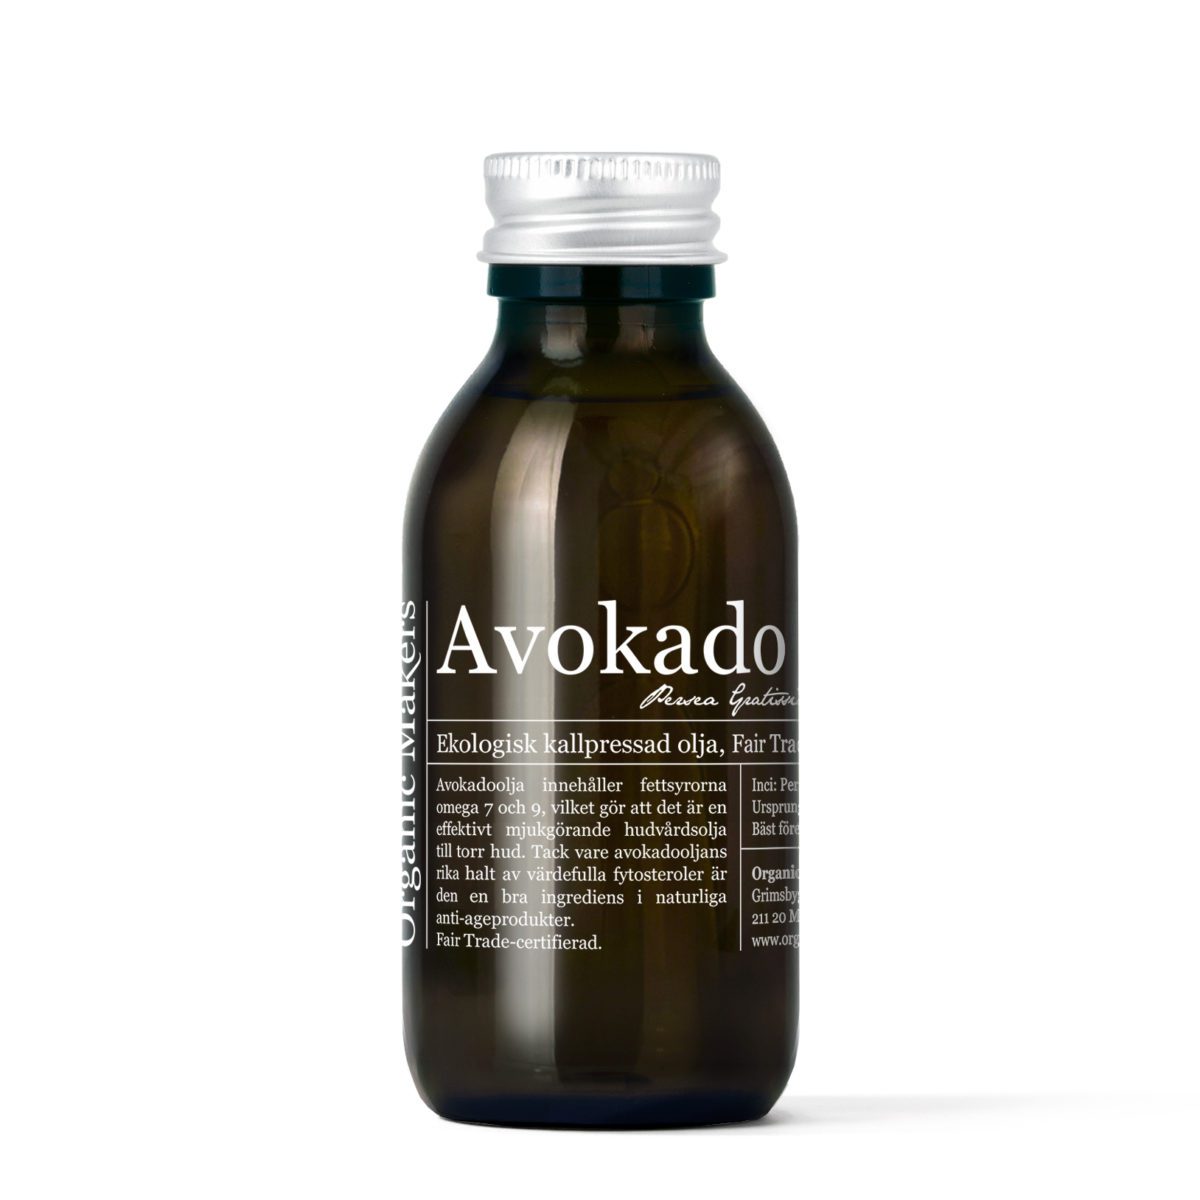 Avokadoolja ekologisk kallpressad 150 ml i glasflaska med kork - organicmakers.se